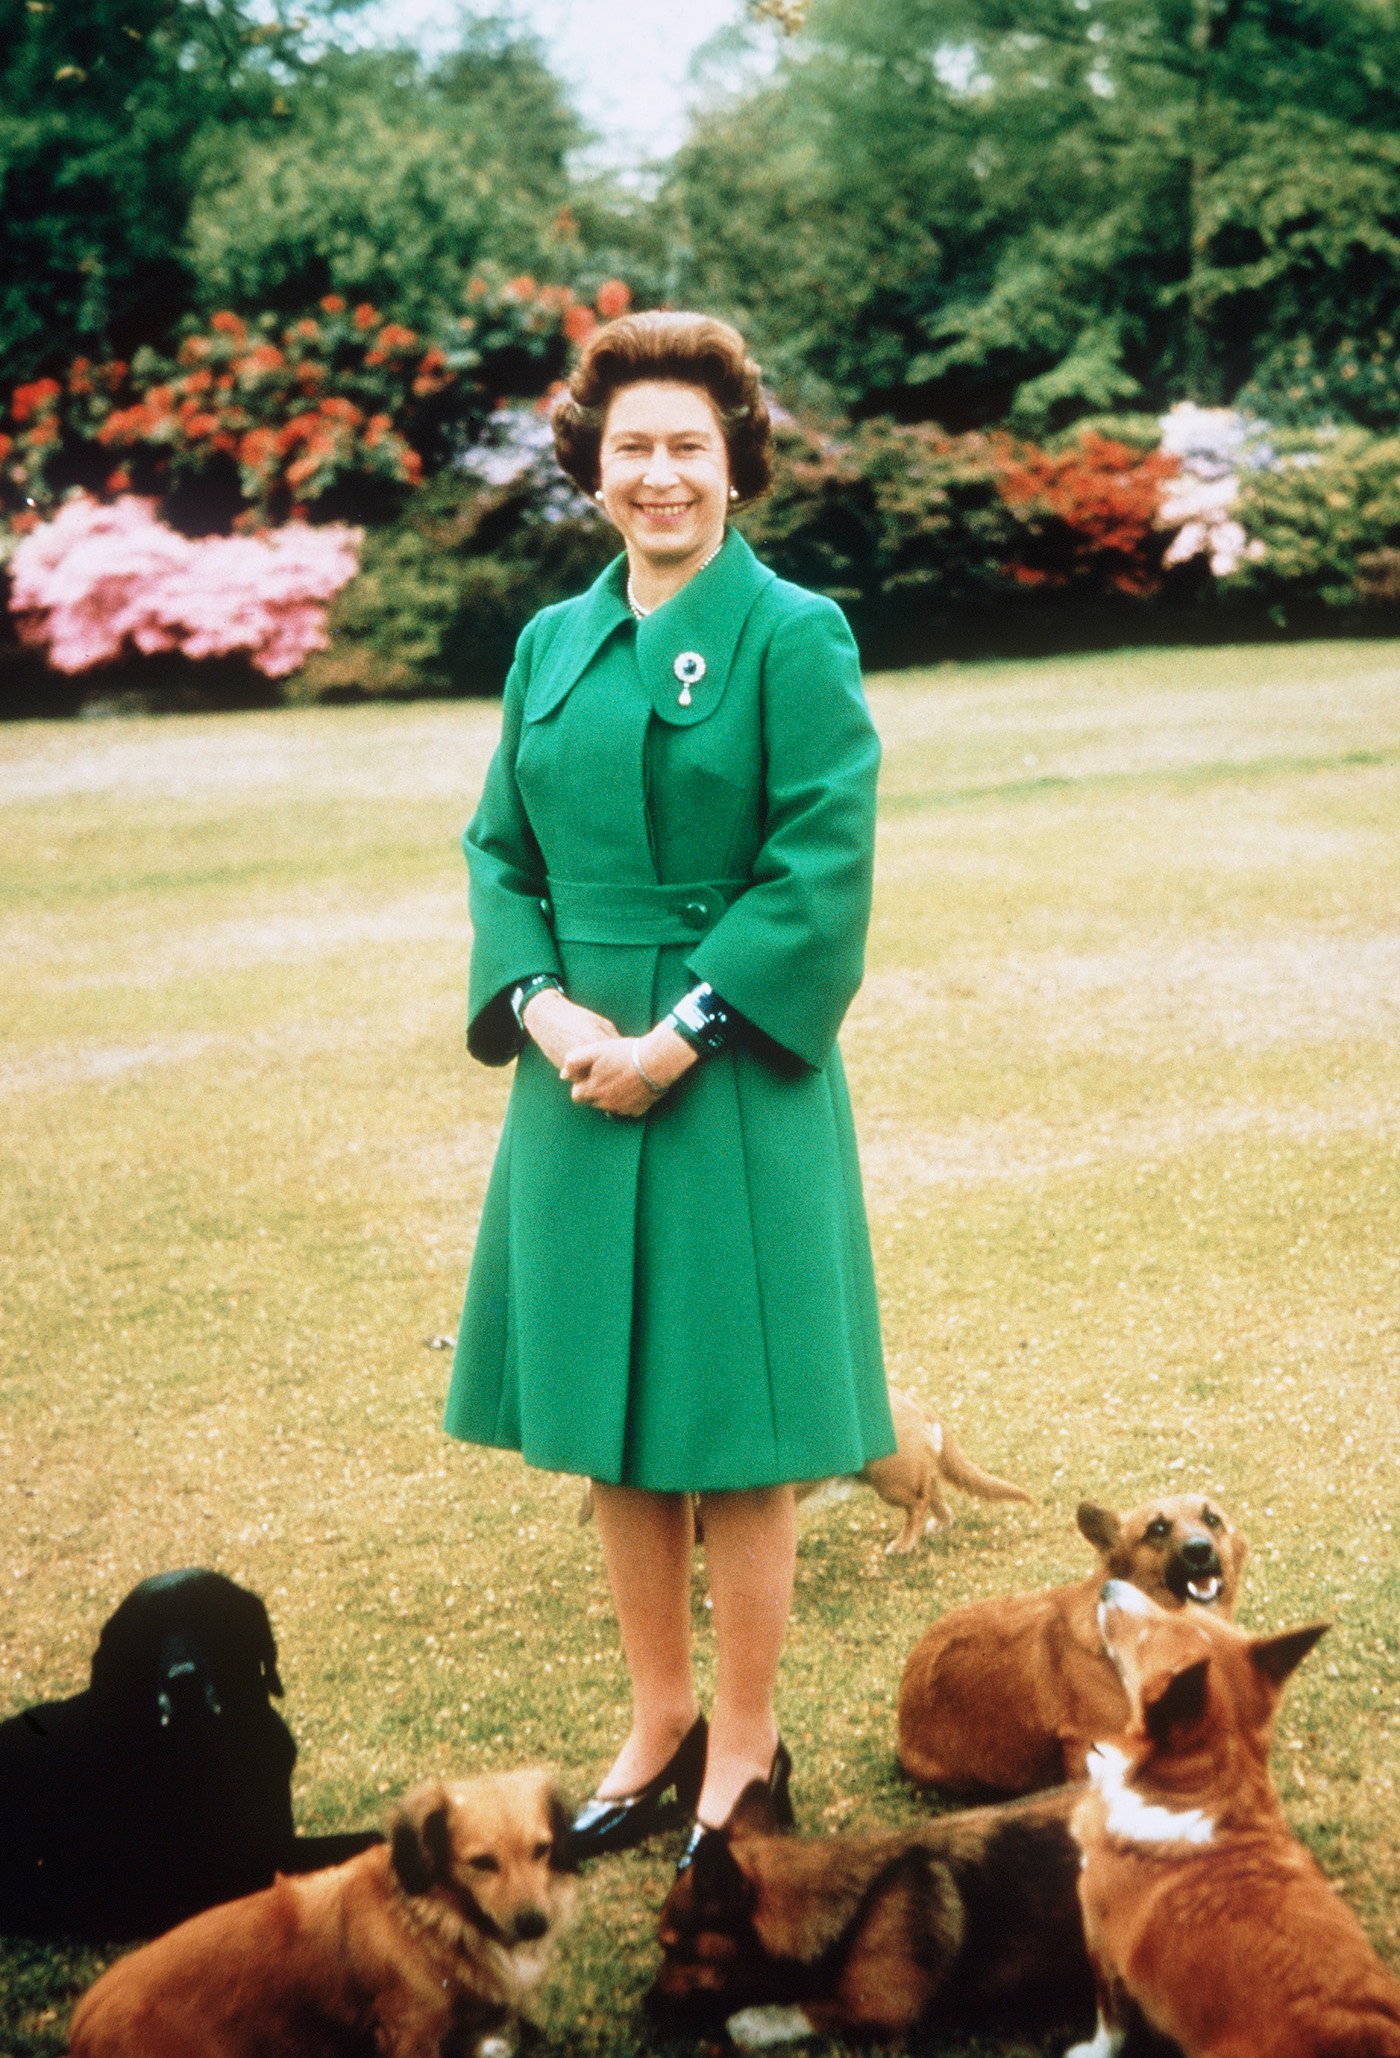 Queen Elizabeth II at Sandringham with dogs